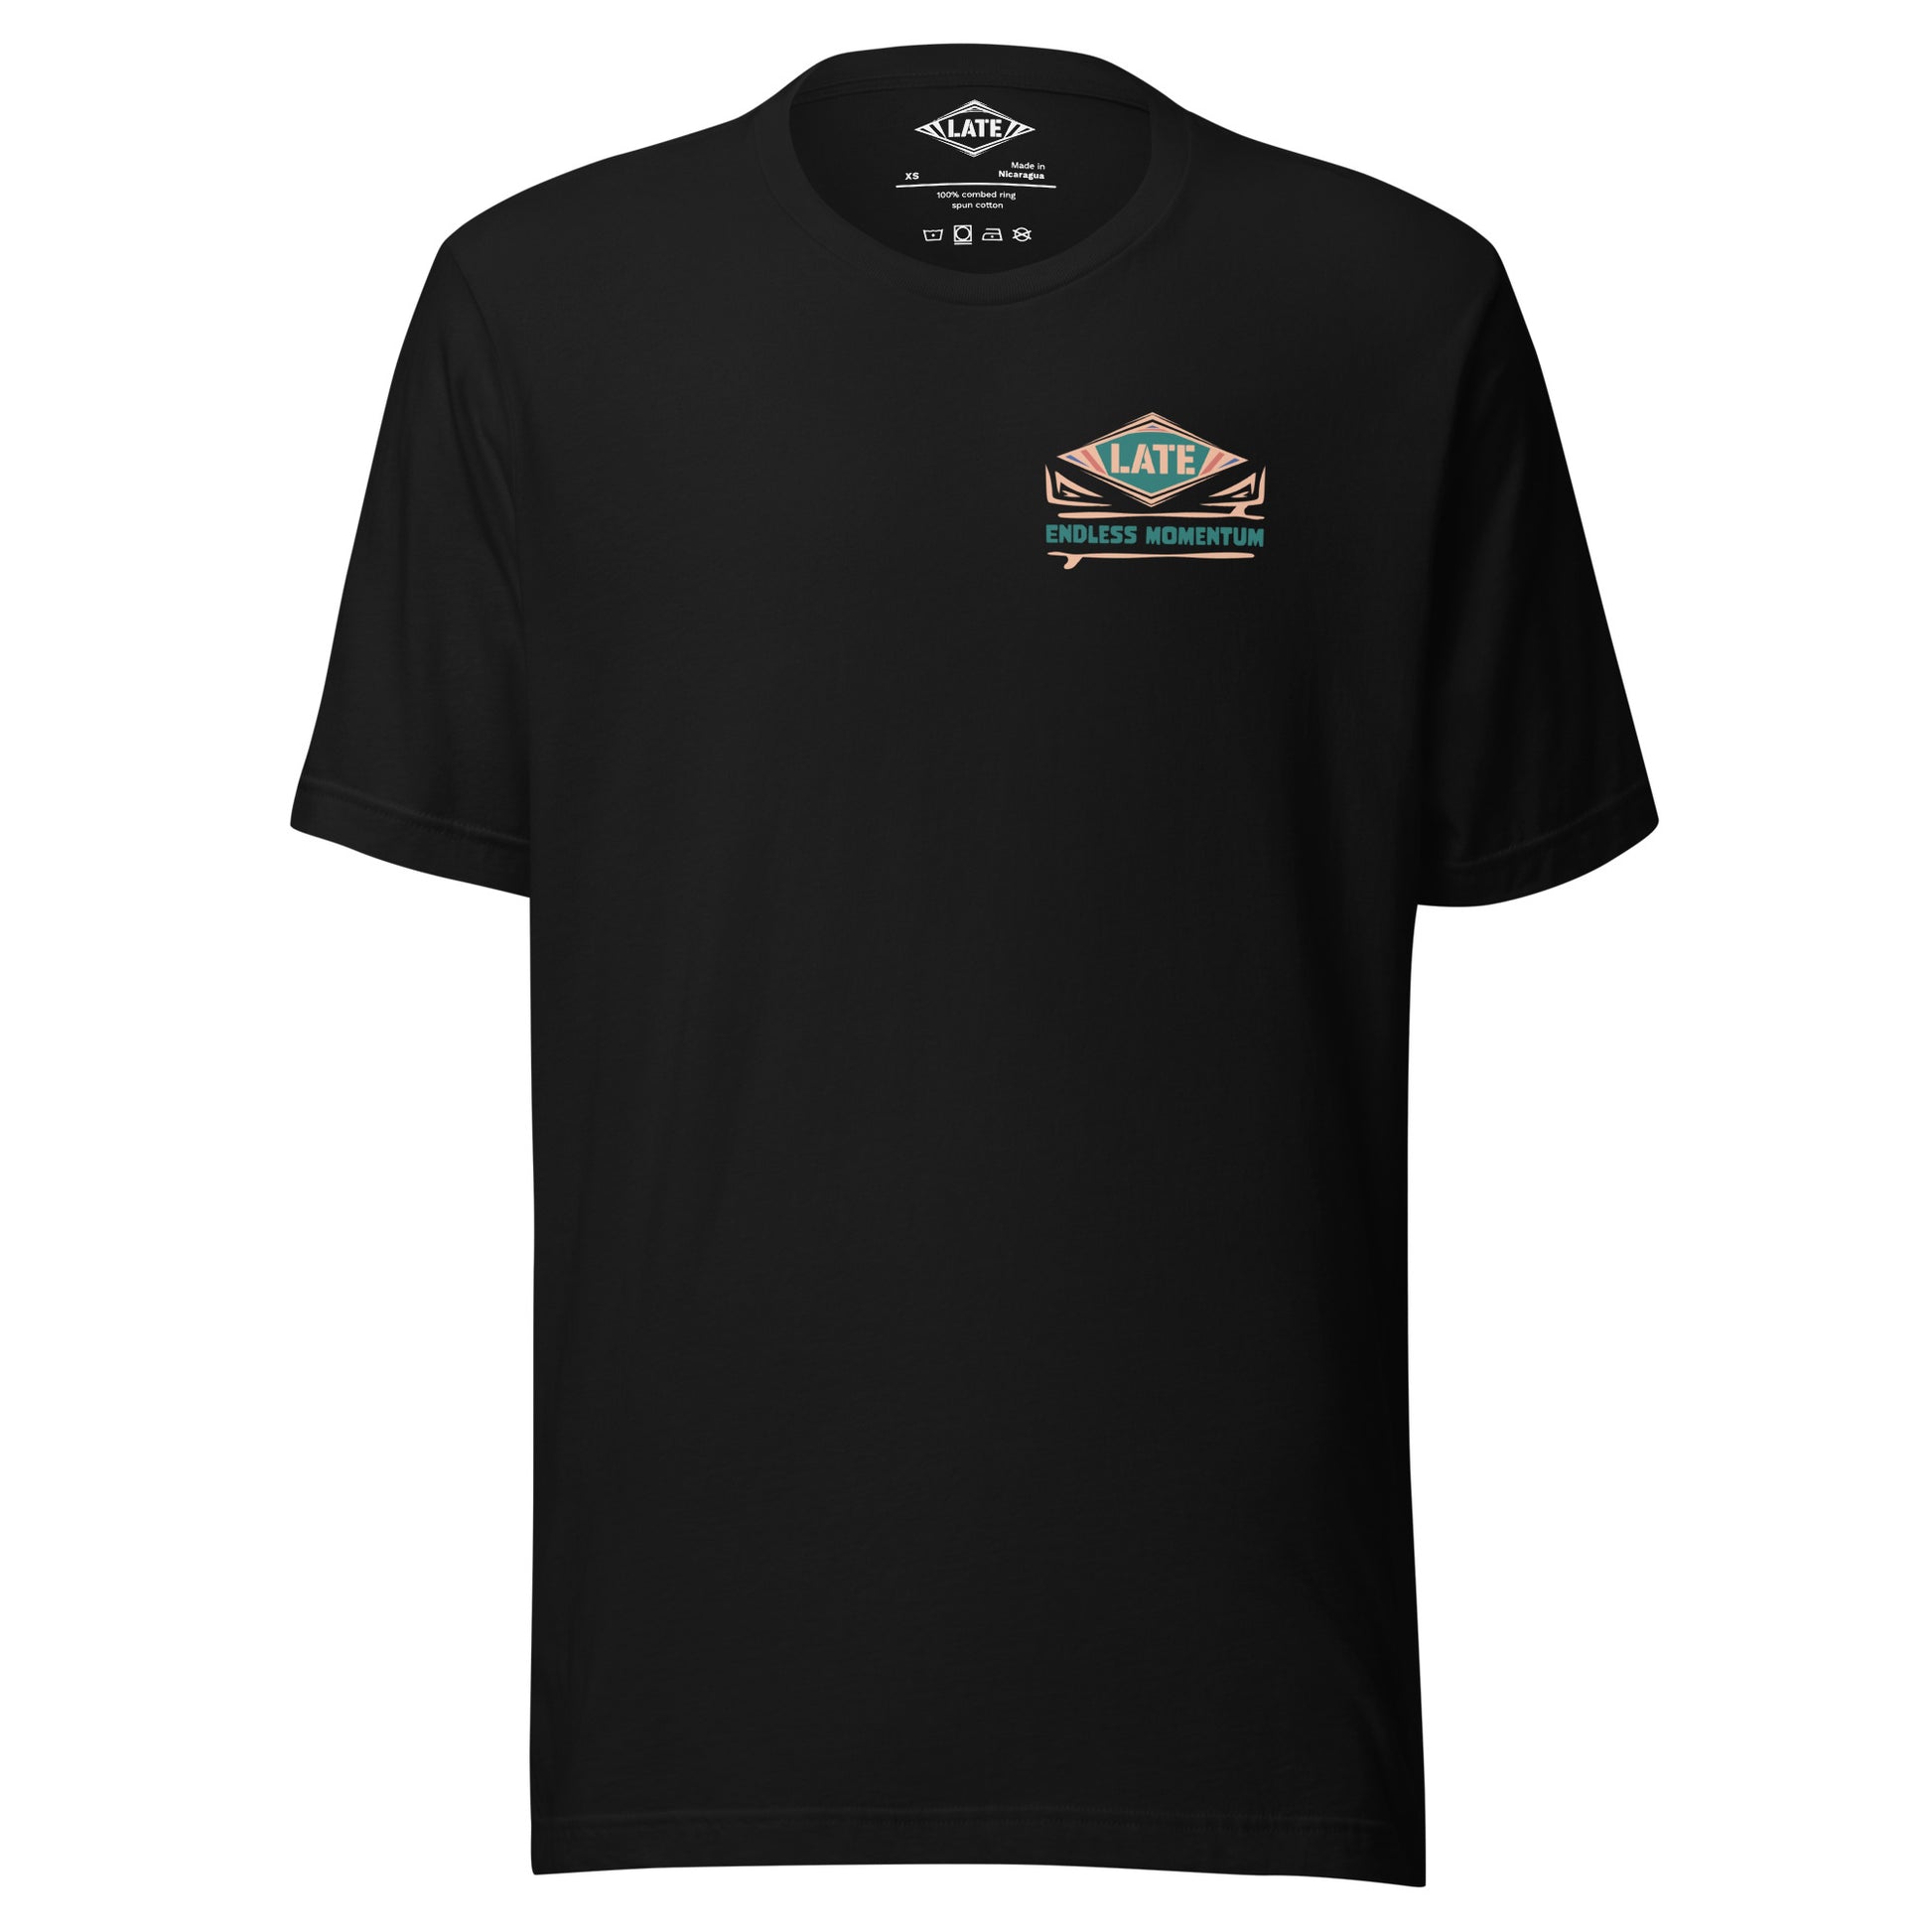 T-shirt surf rétro polynésiens, endless momentum avec motifs maori et des iles, logo Late, tee-shirt unisexe de face et noir